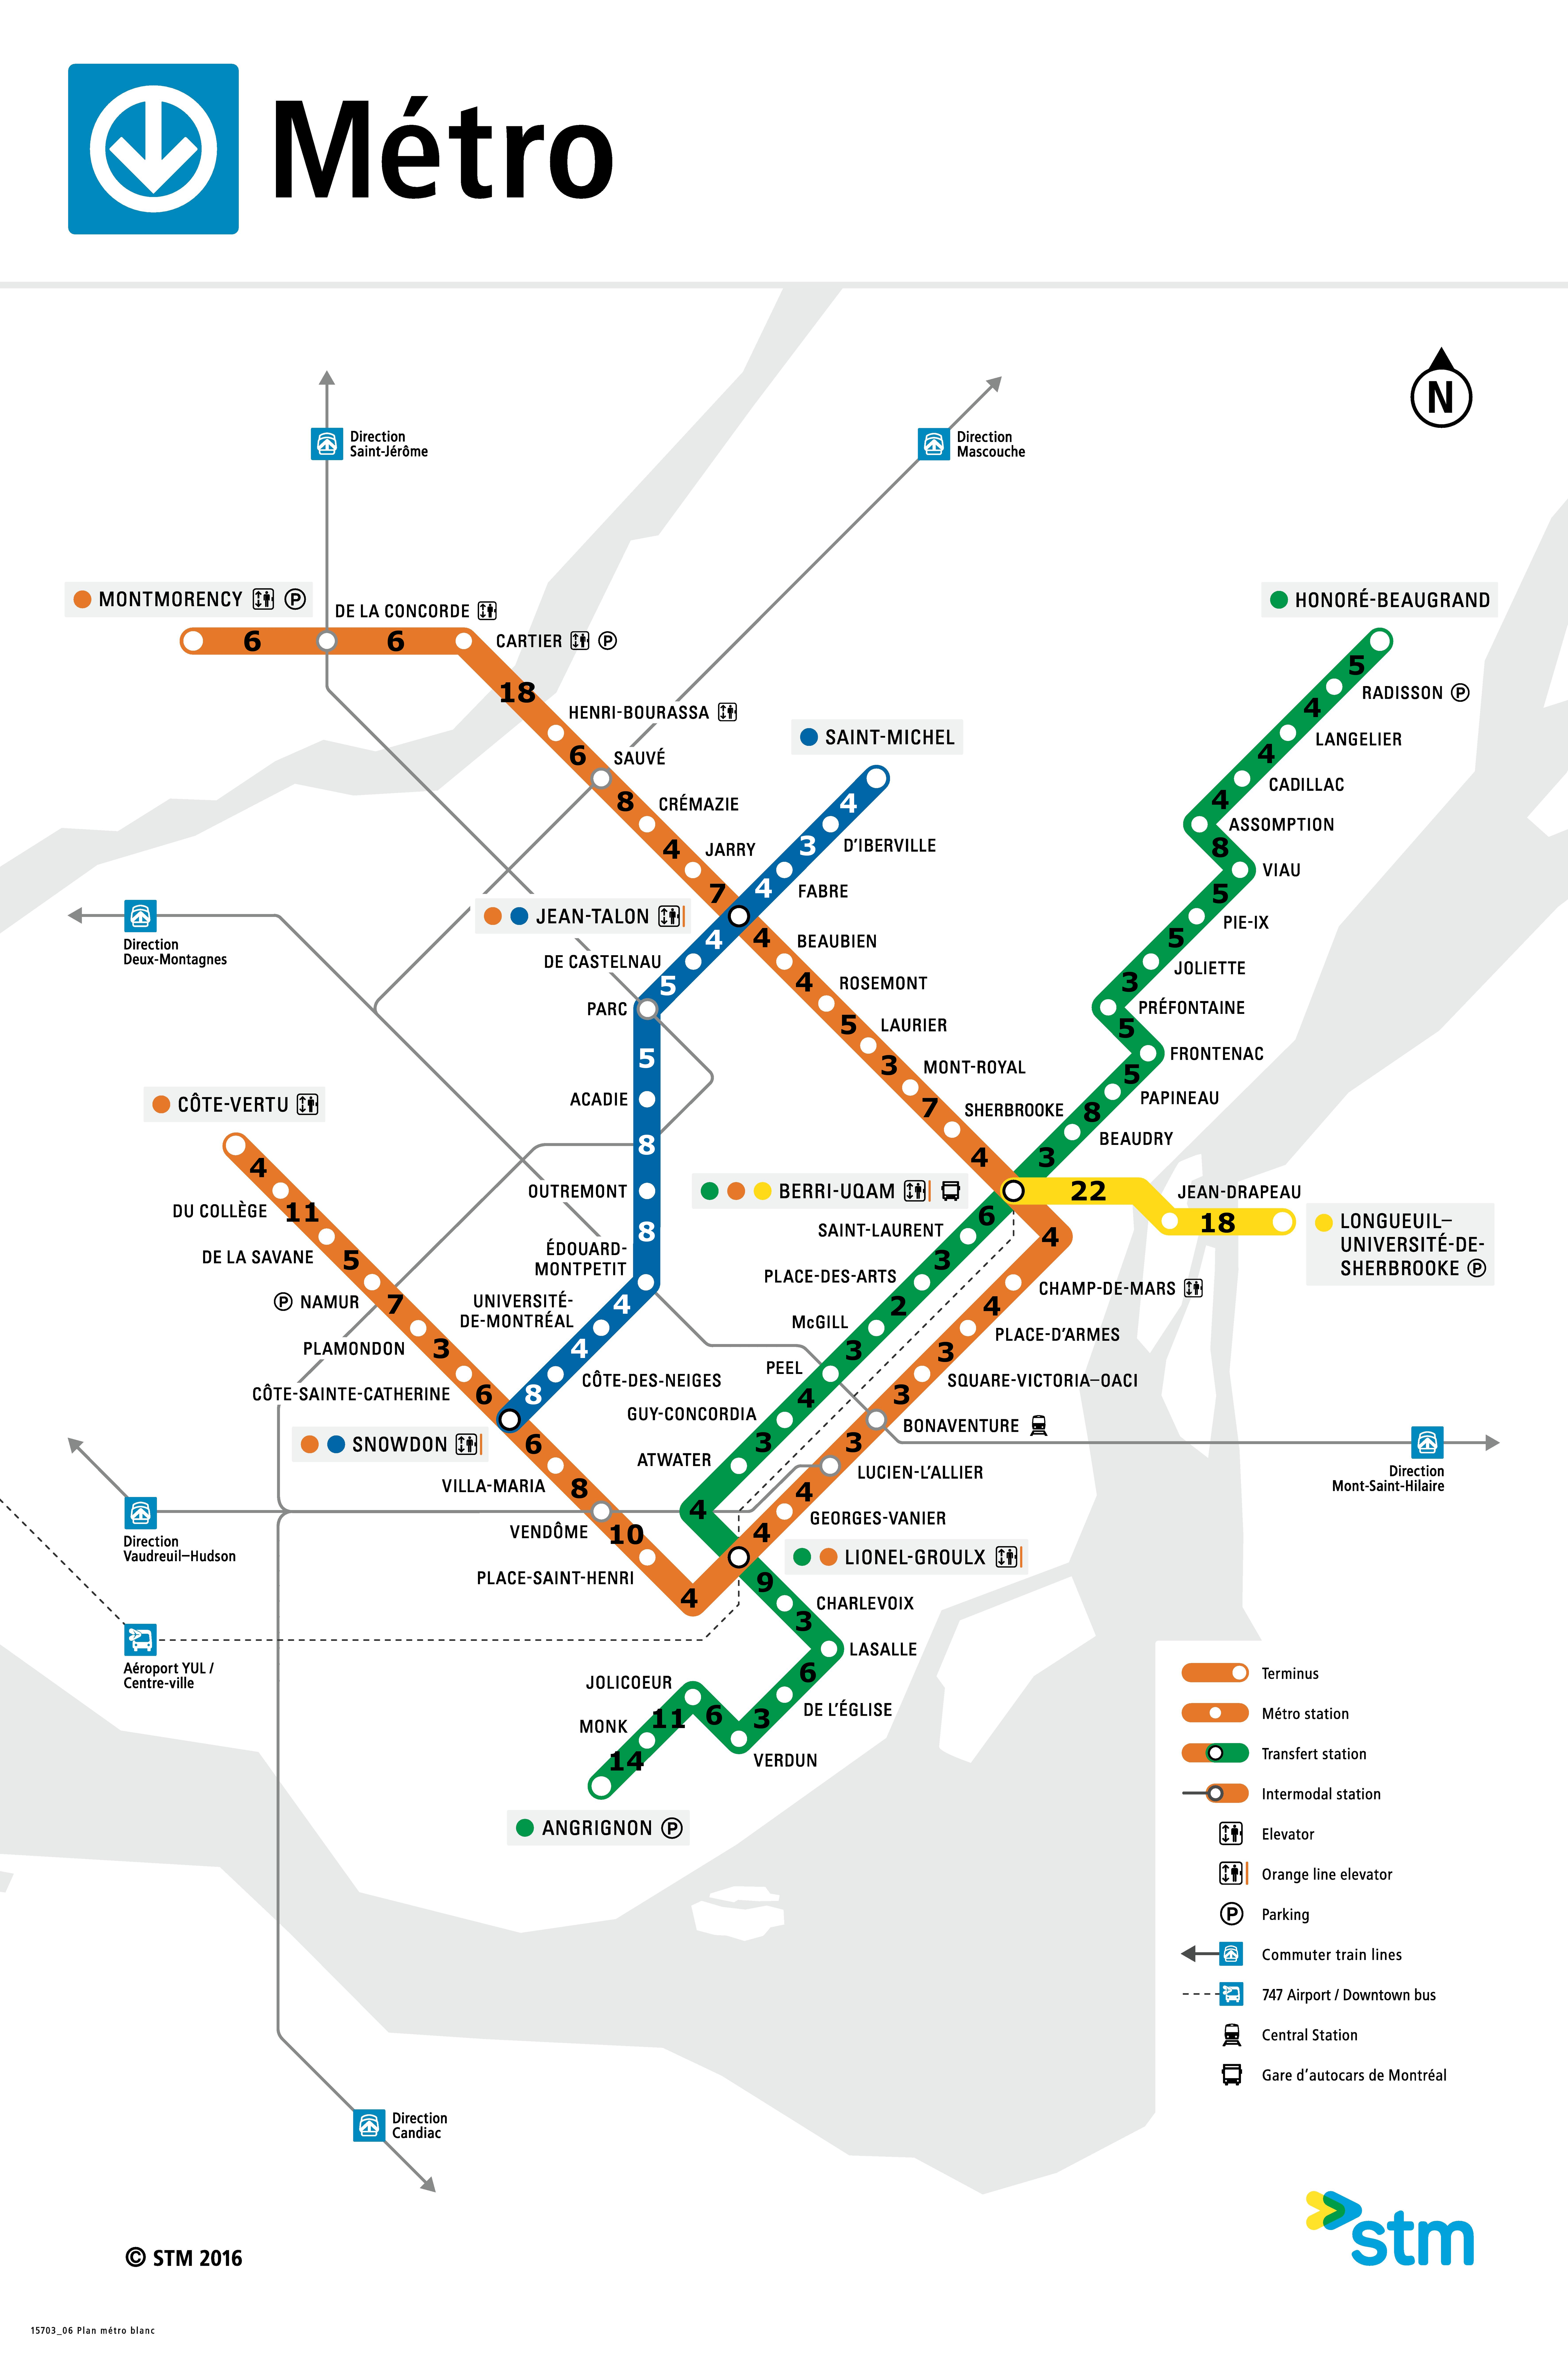 metro 4 line plan